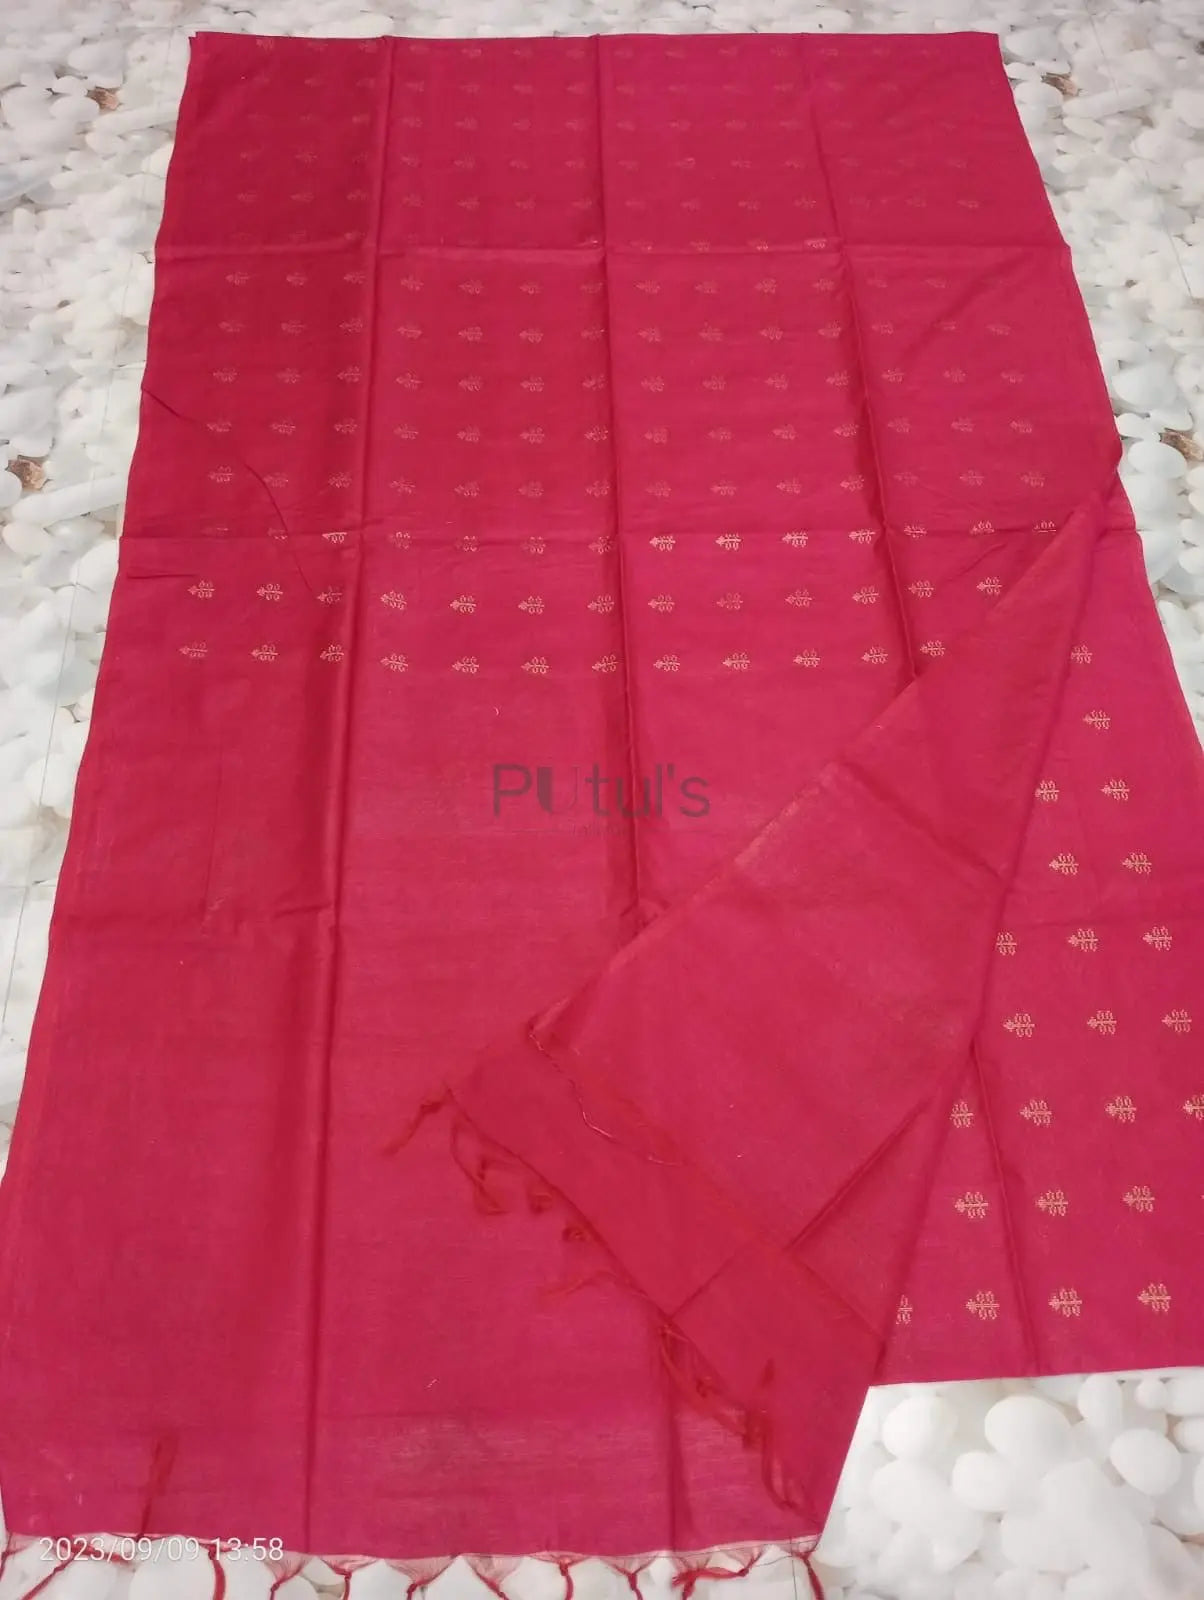 Semi bapta silk saree with zari butta Putul's Fashion